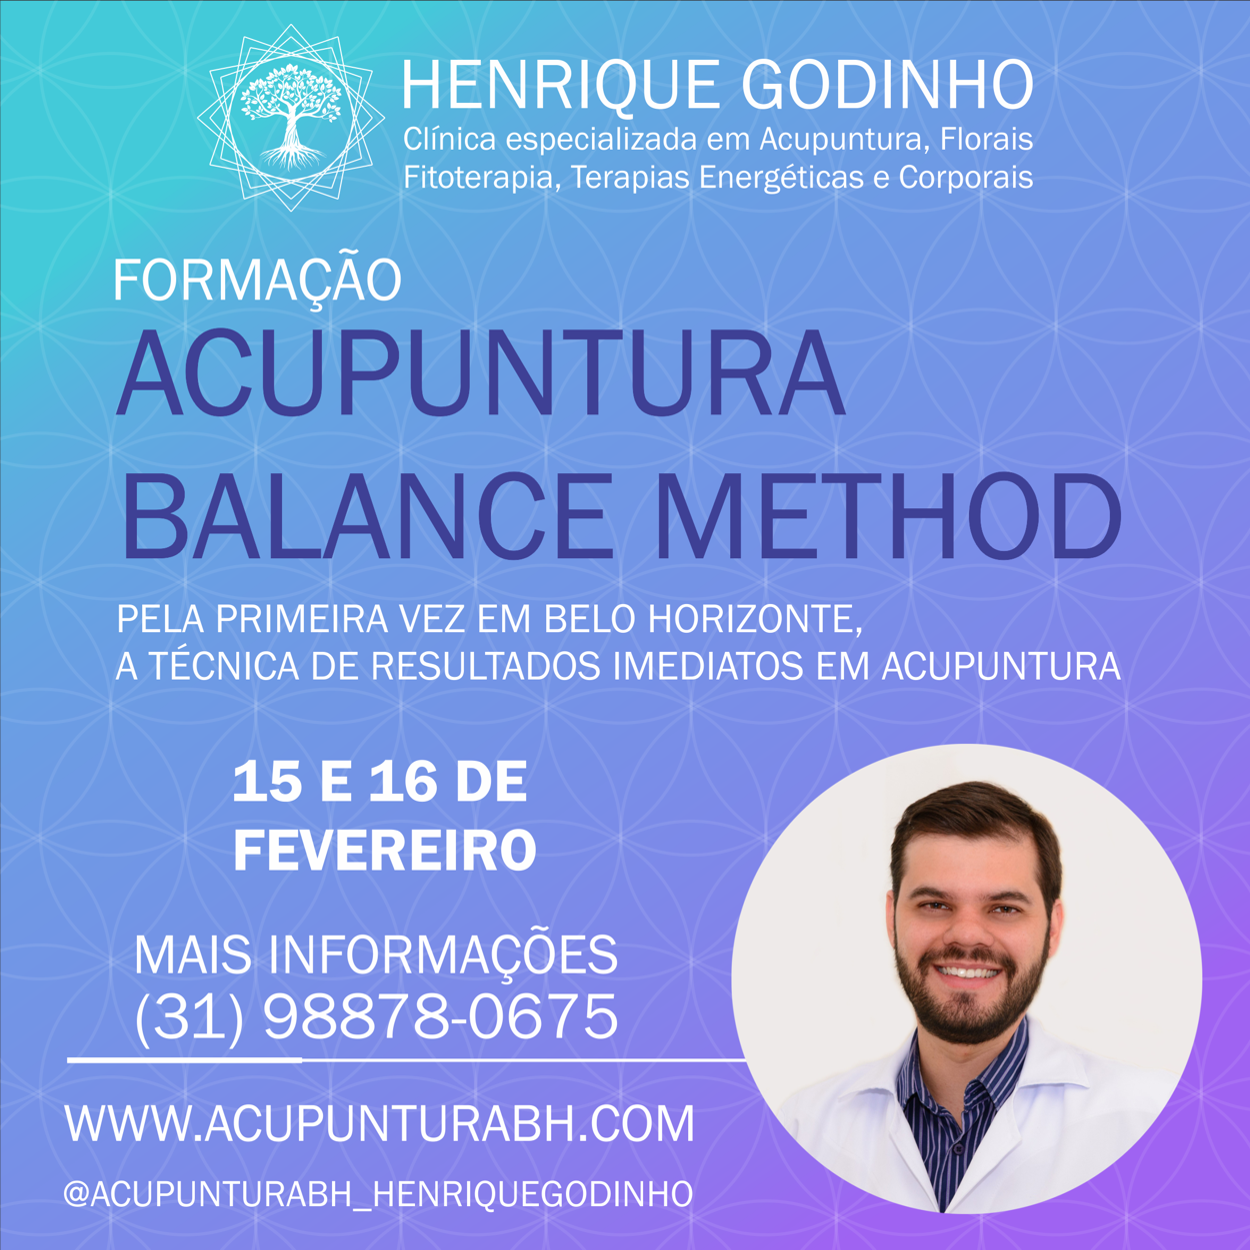 Formação Balance Method Acupuntura BH Henrique Godinho